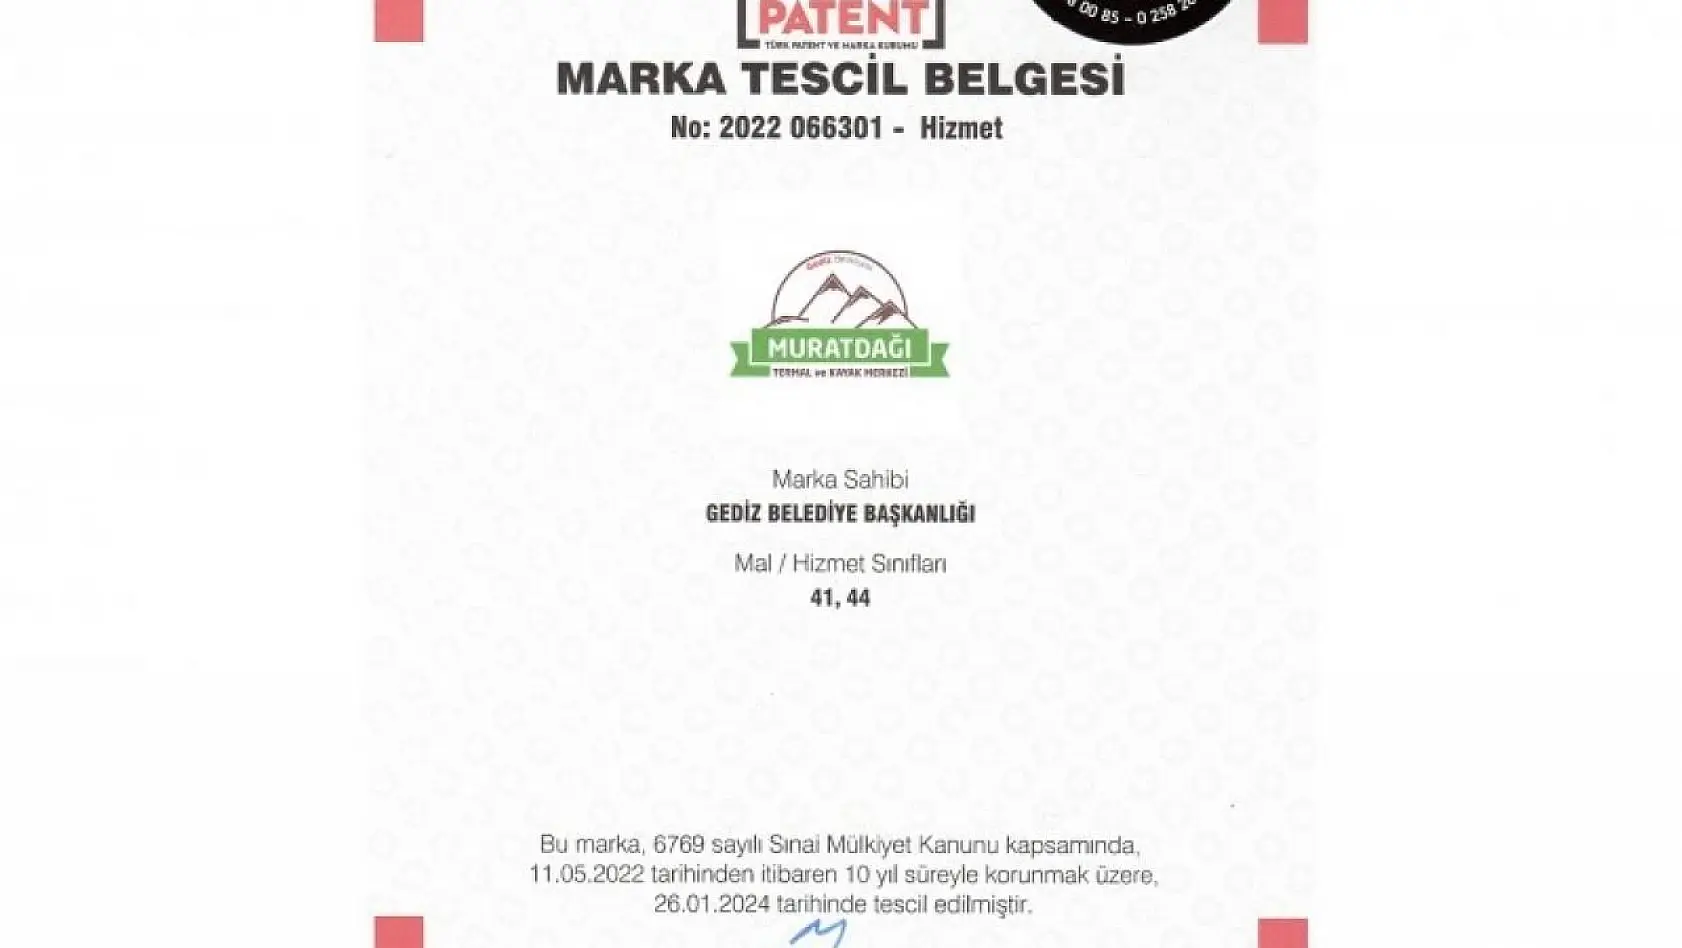 Murat Dağı Termal Kayak Merkezi marka tescil belgesi alındı